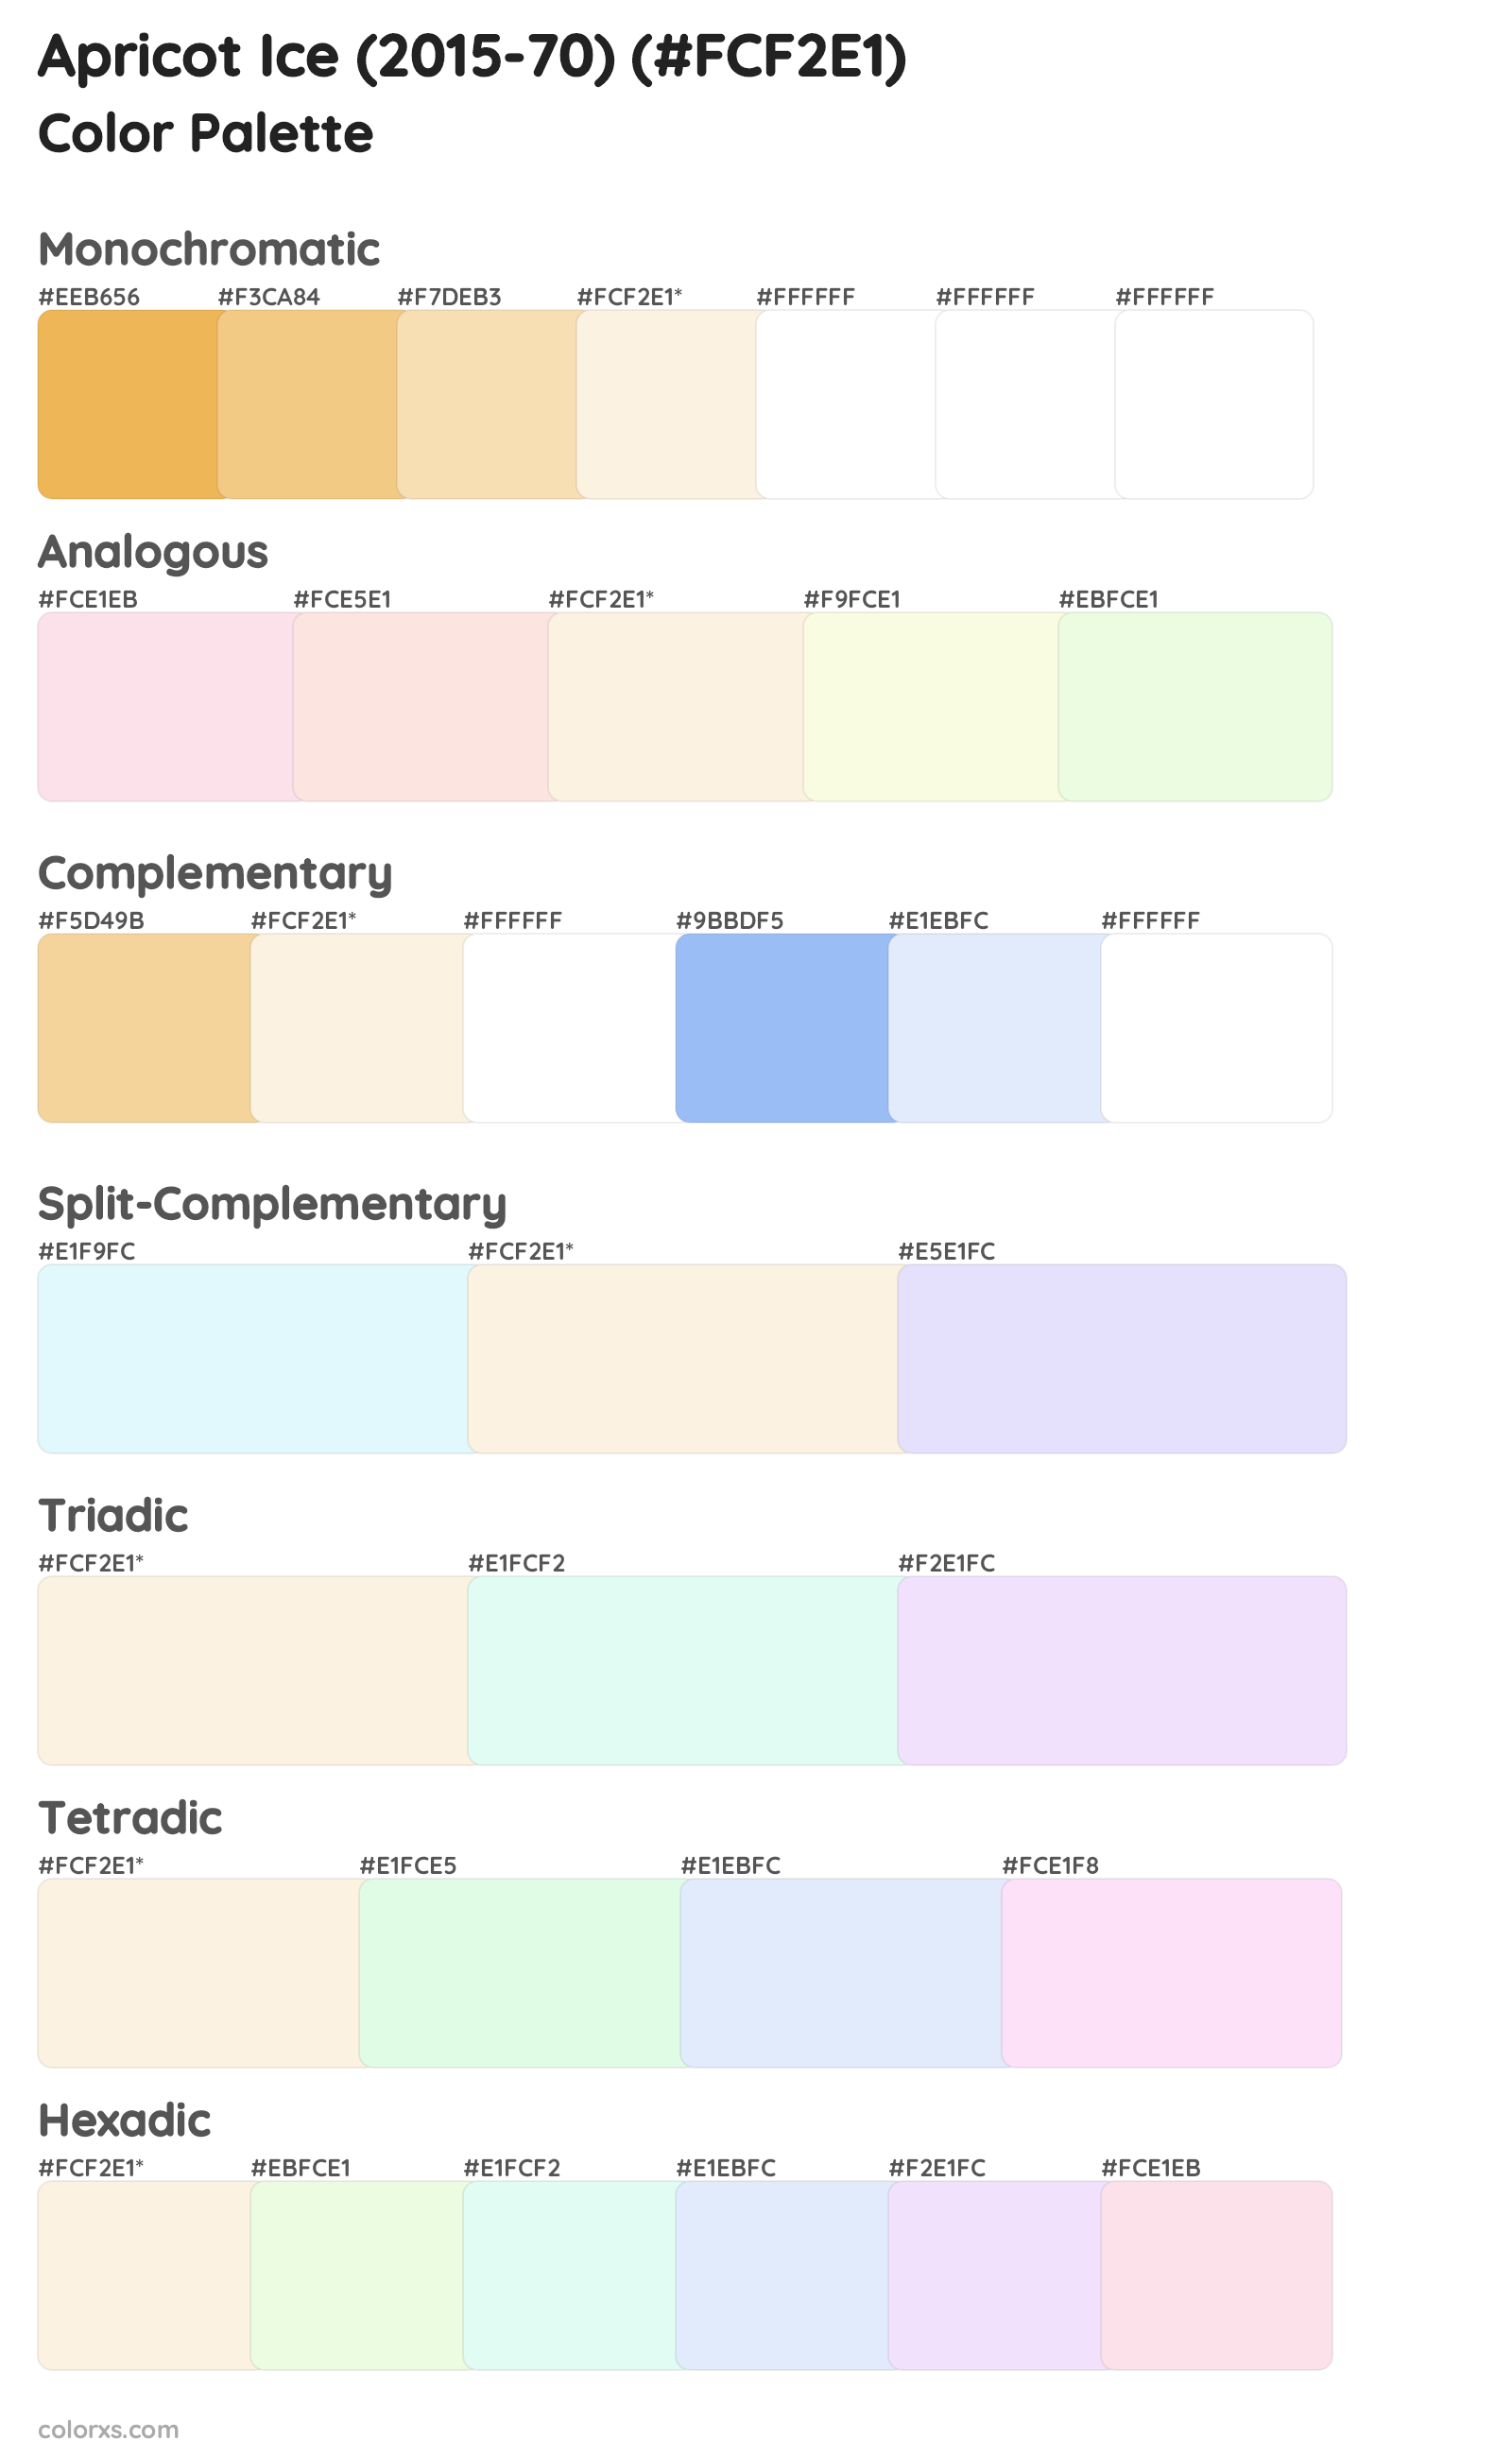 Apricot Ice (2015-70) Color Scheme Palettes